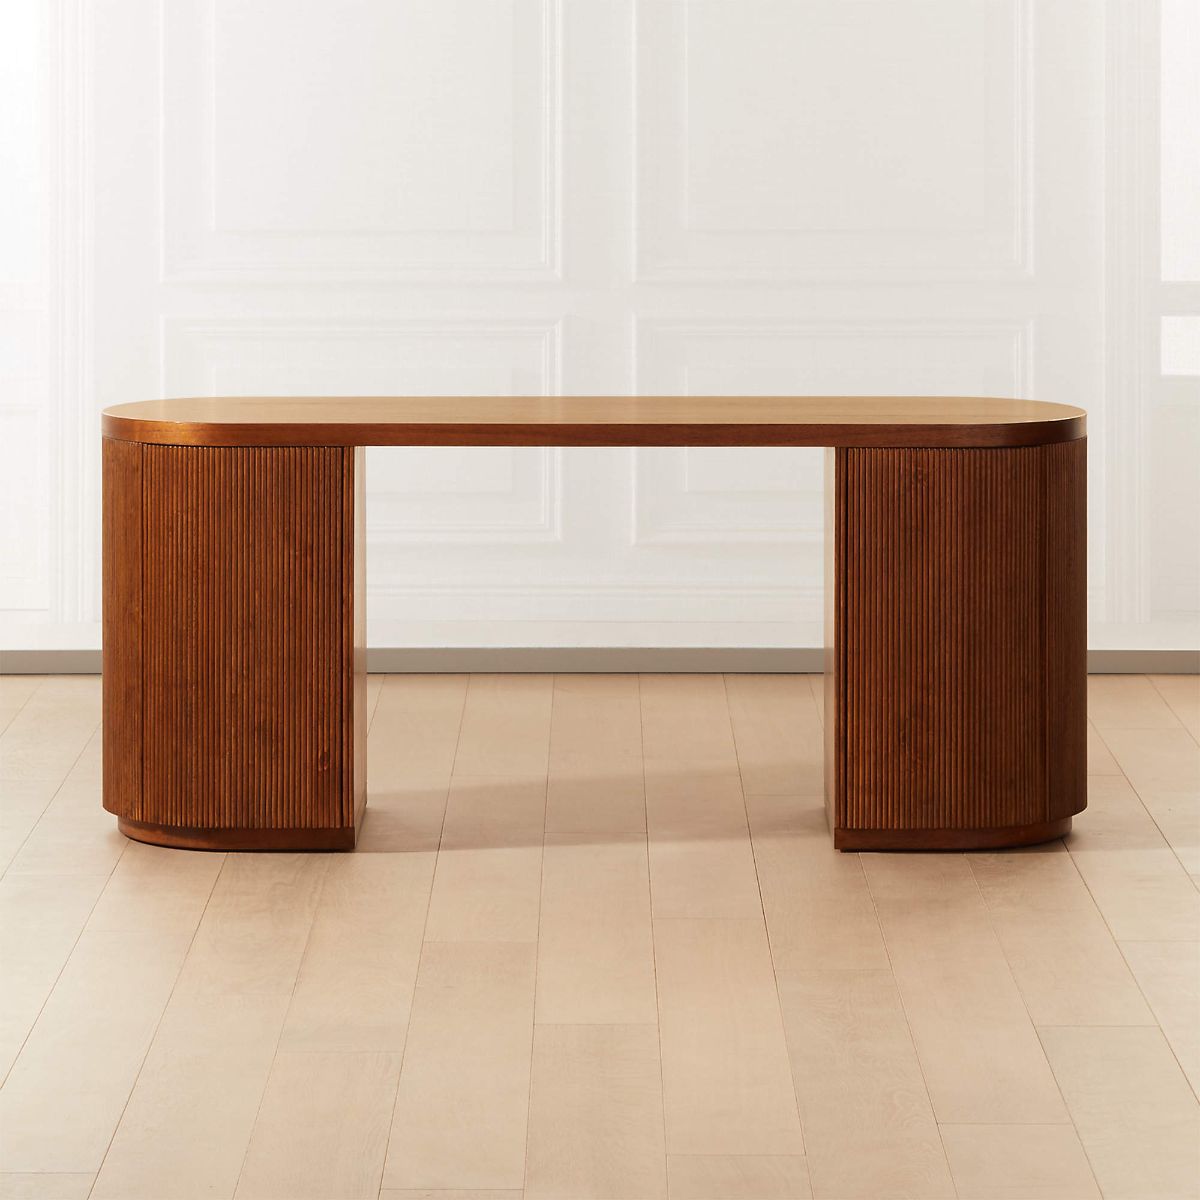 由CB2制作的陈列室完全华丽的木质椭圆形办公桌